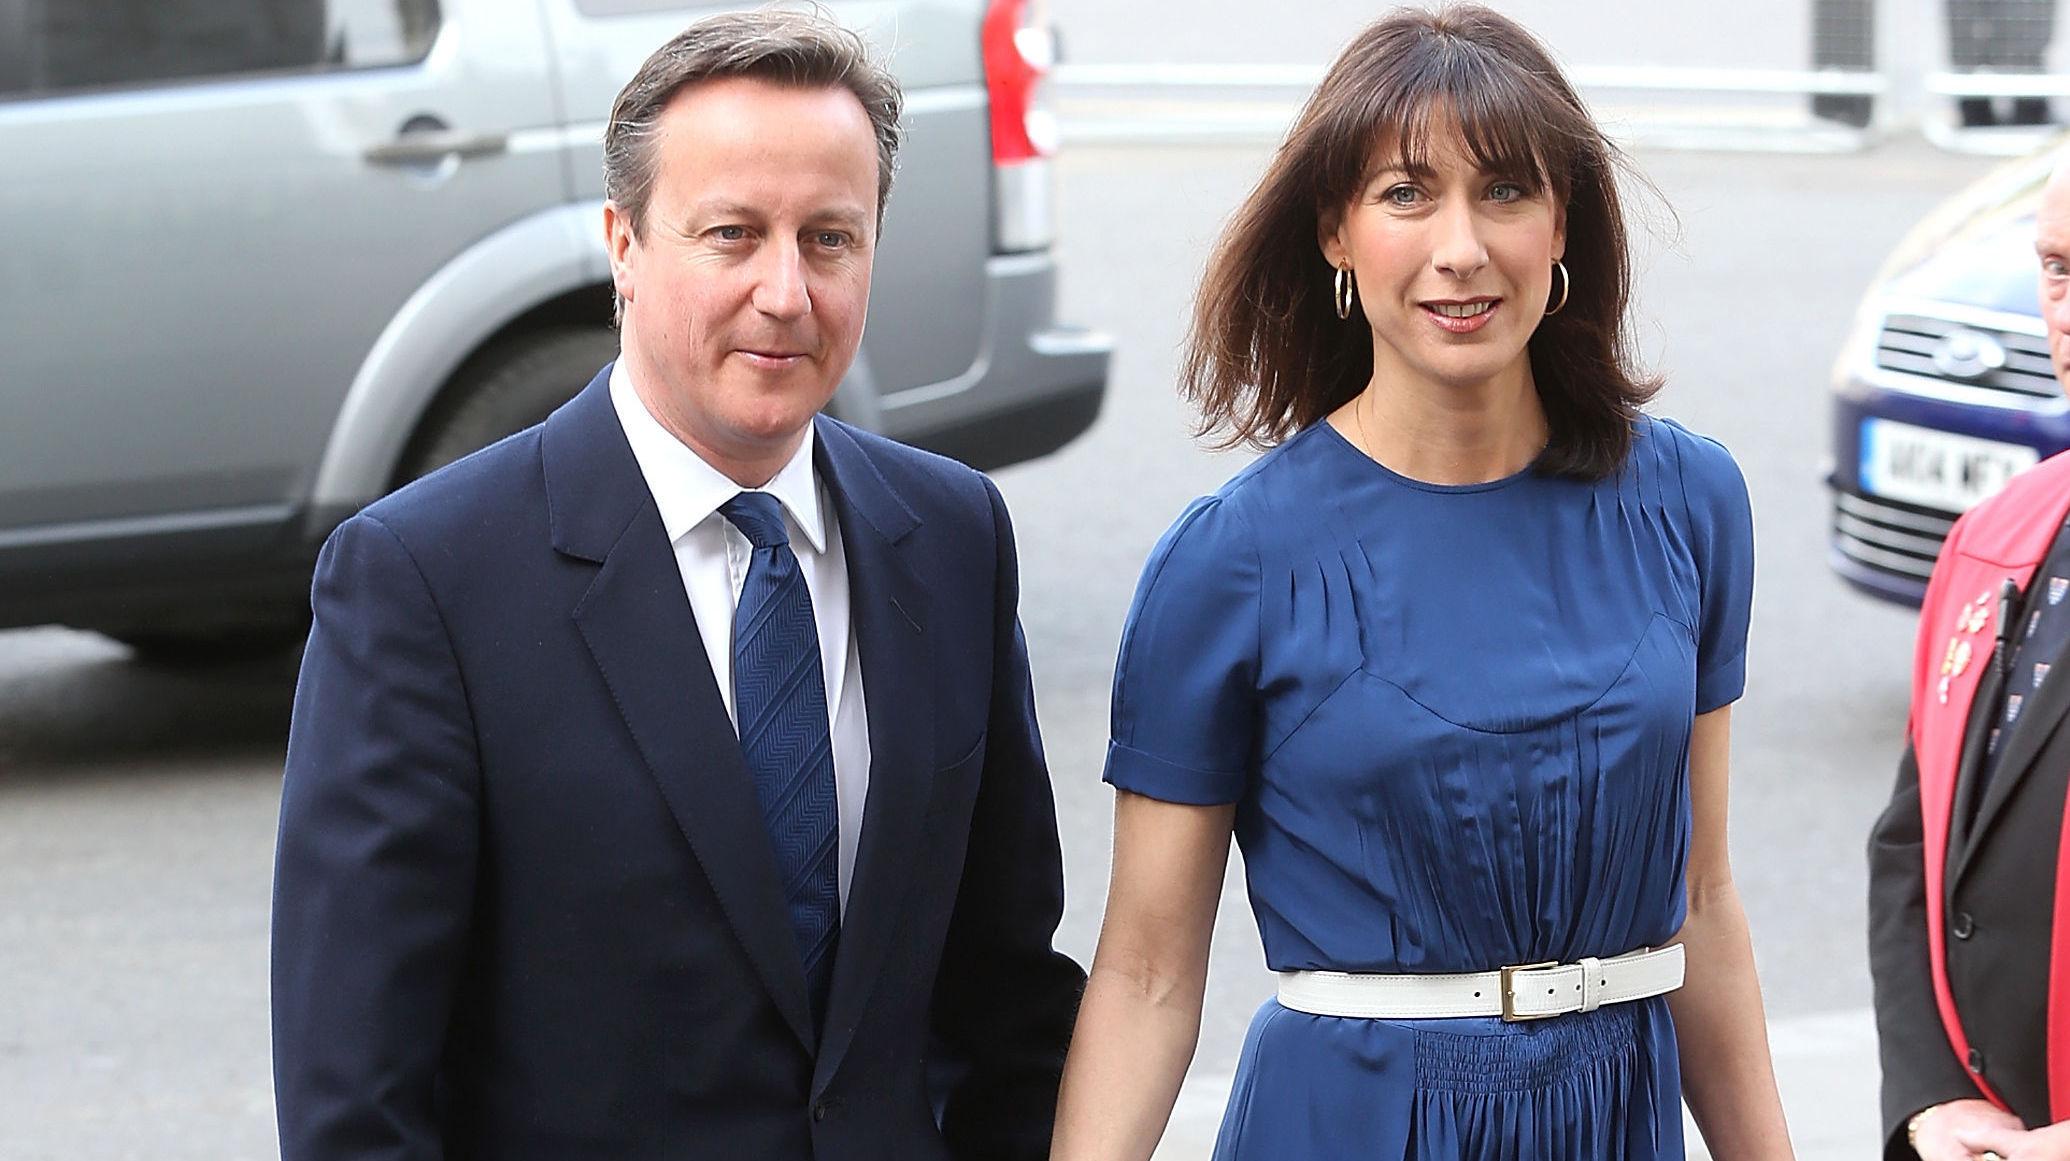 MATCHENDE PAR: Her matcher David Camerons slips til Samantha Camerons kjole - uten at det er påfallende. Foto: Getty Images